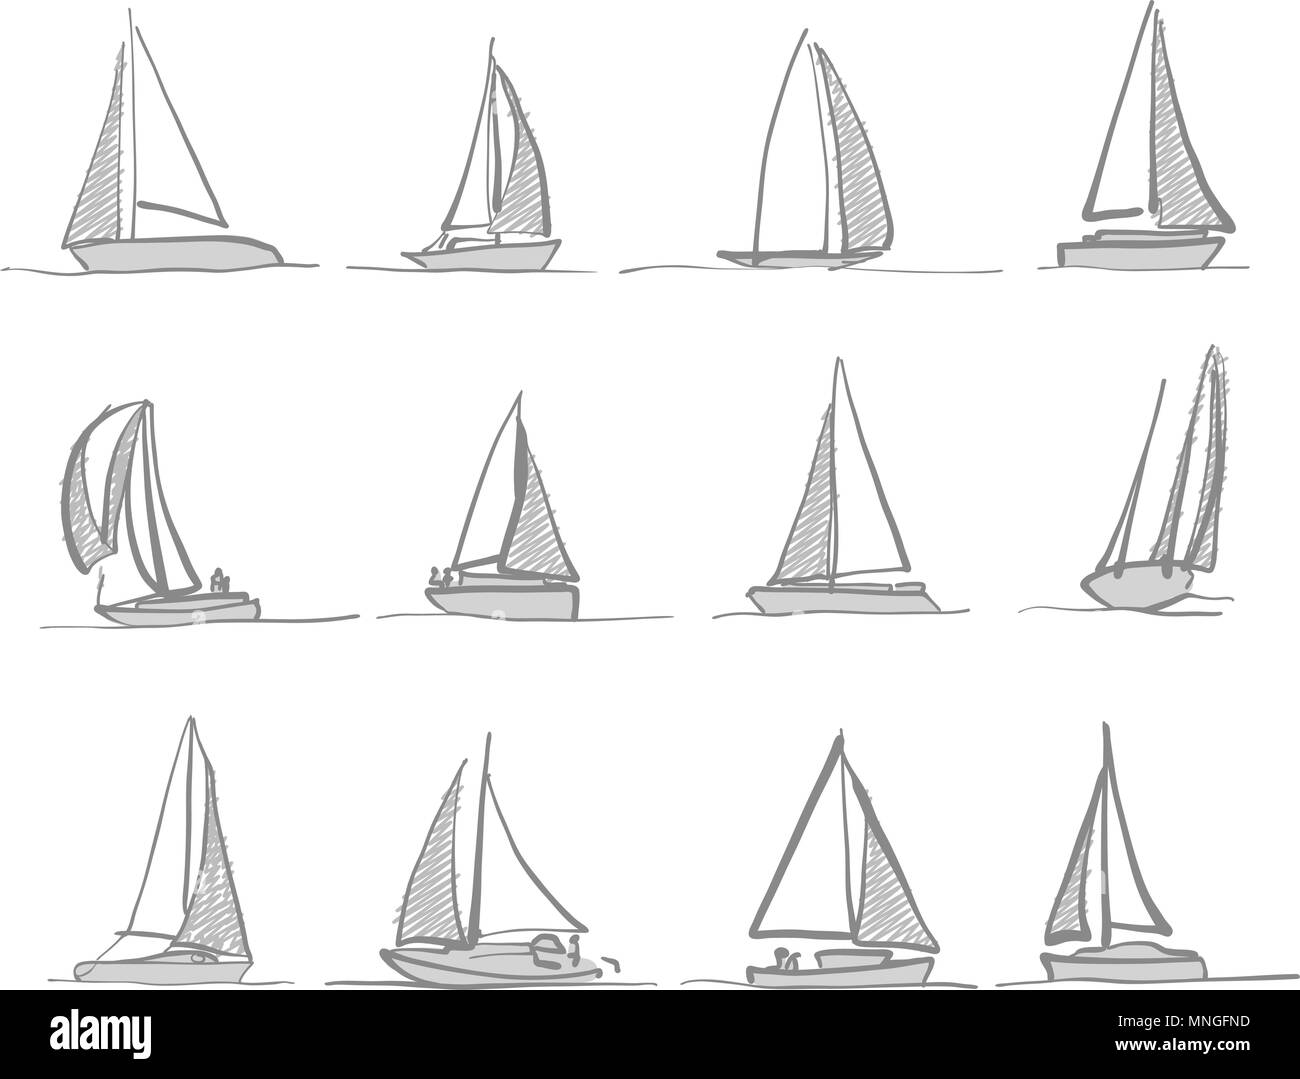 Sailing boat drawings, hand-drawn icons Stock Vector